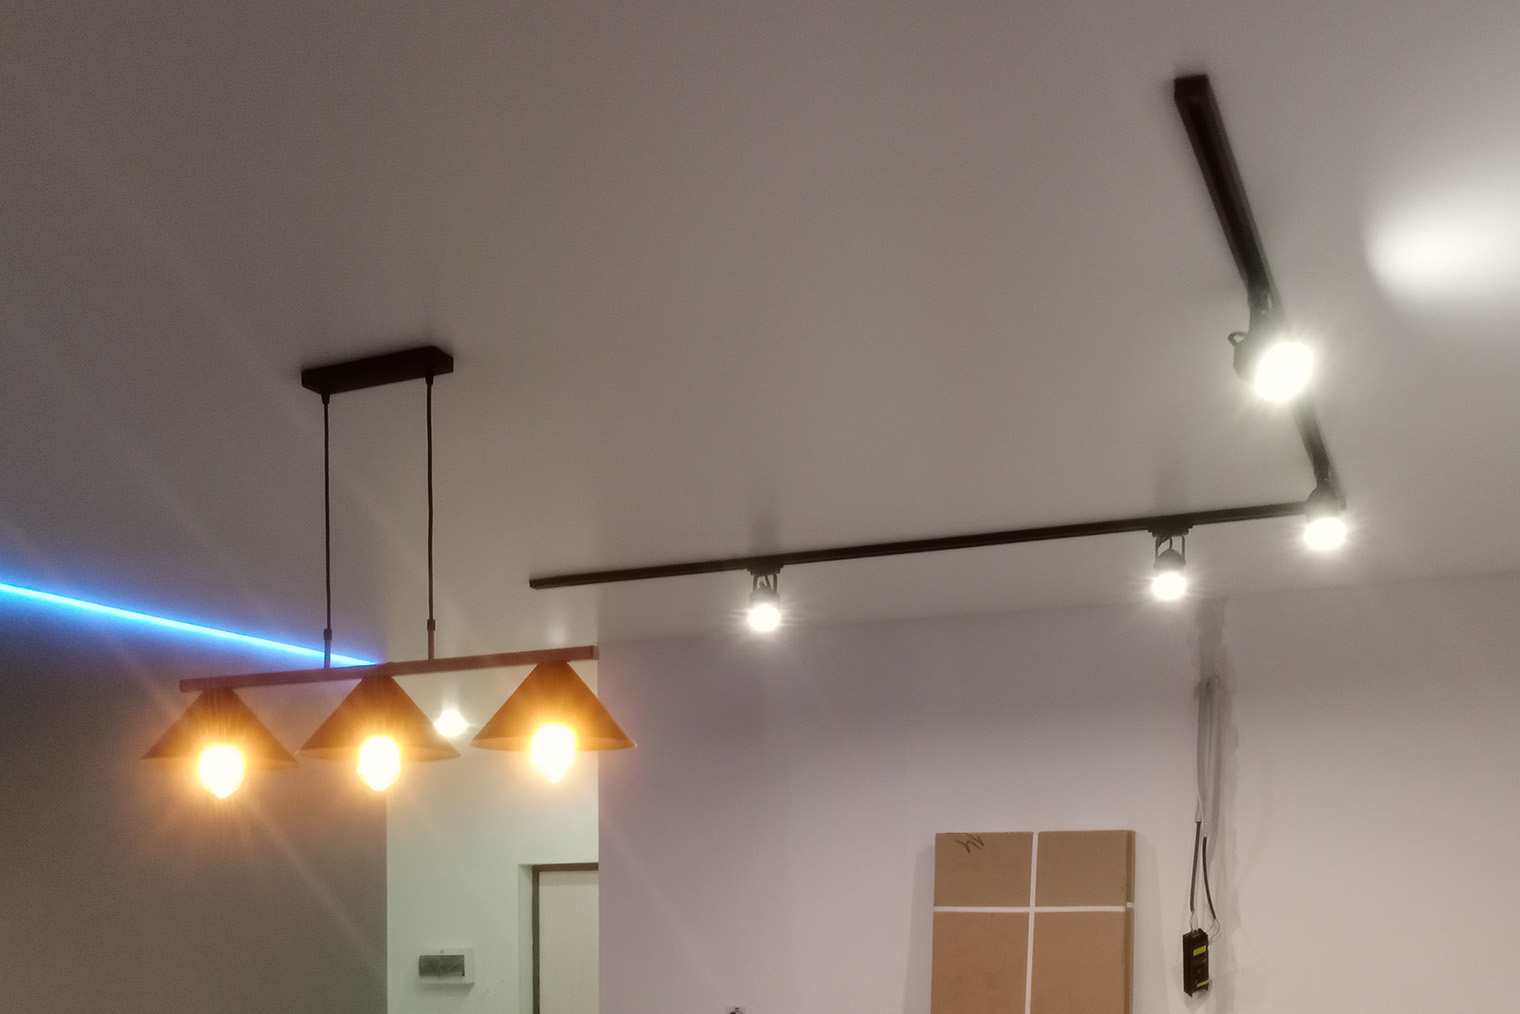 Парящий потолок позволяет совмещать разные виды освещения. Здесь используются трековые светильники, люстра и светодиодная лента. Фотография: Александр Хлыбов